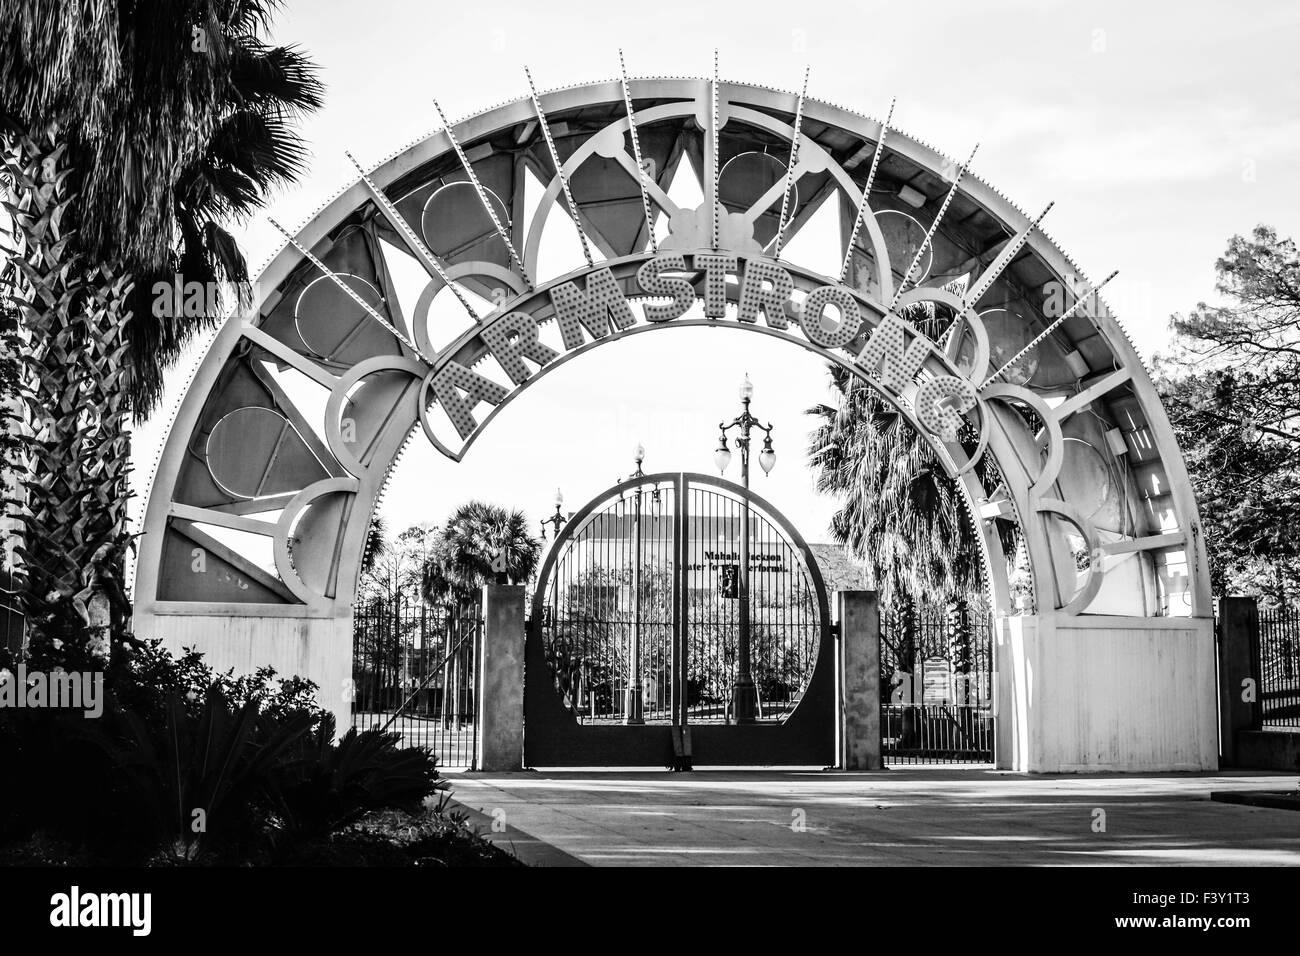 La porte circulaire en fer et l'entrée de l'arcade métallique à l'impressionnant parc Louis Armstrong dans le quartier Treme de la Nouvelle-Orléans, LA, États-Unis Banque D'Images